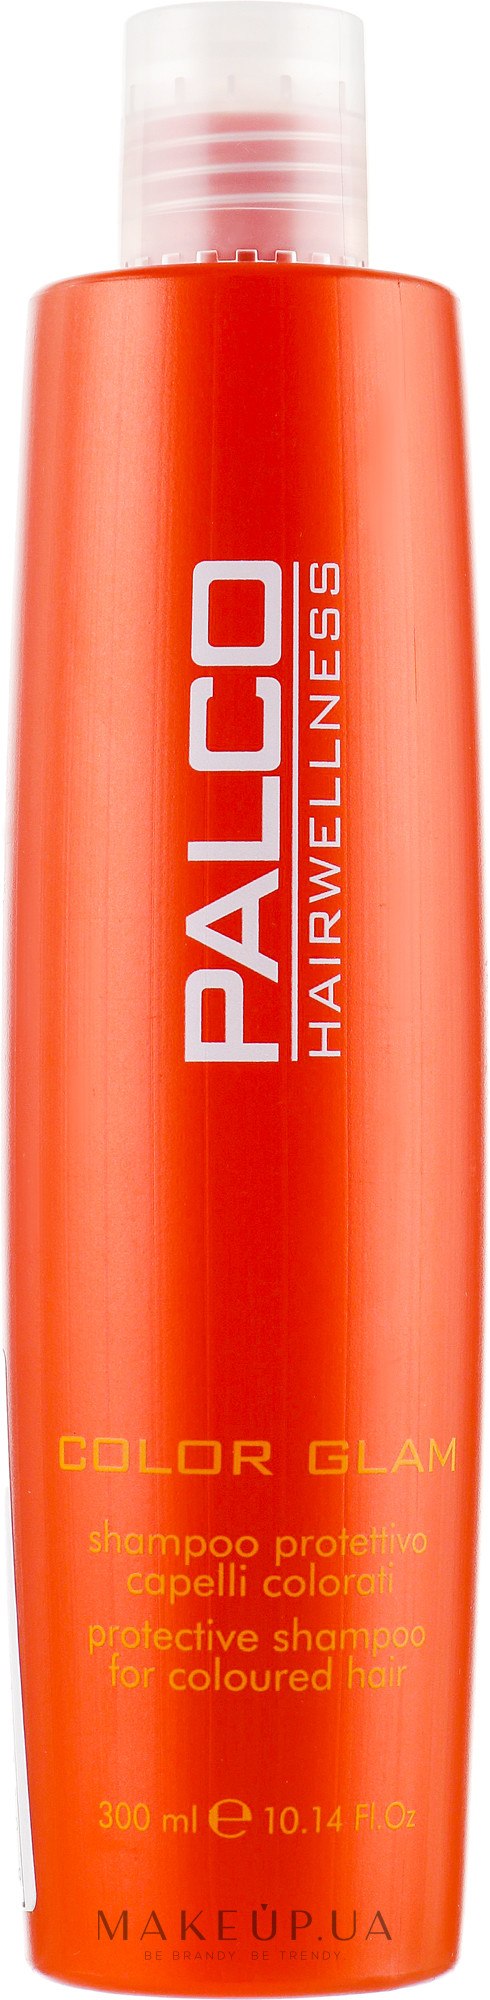 Шампунь для окрашенных волос - Palco Professional Color Glem Shampoo — фото 300ml